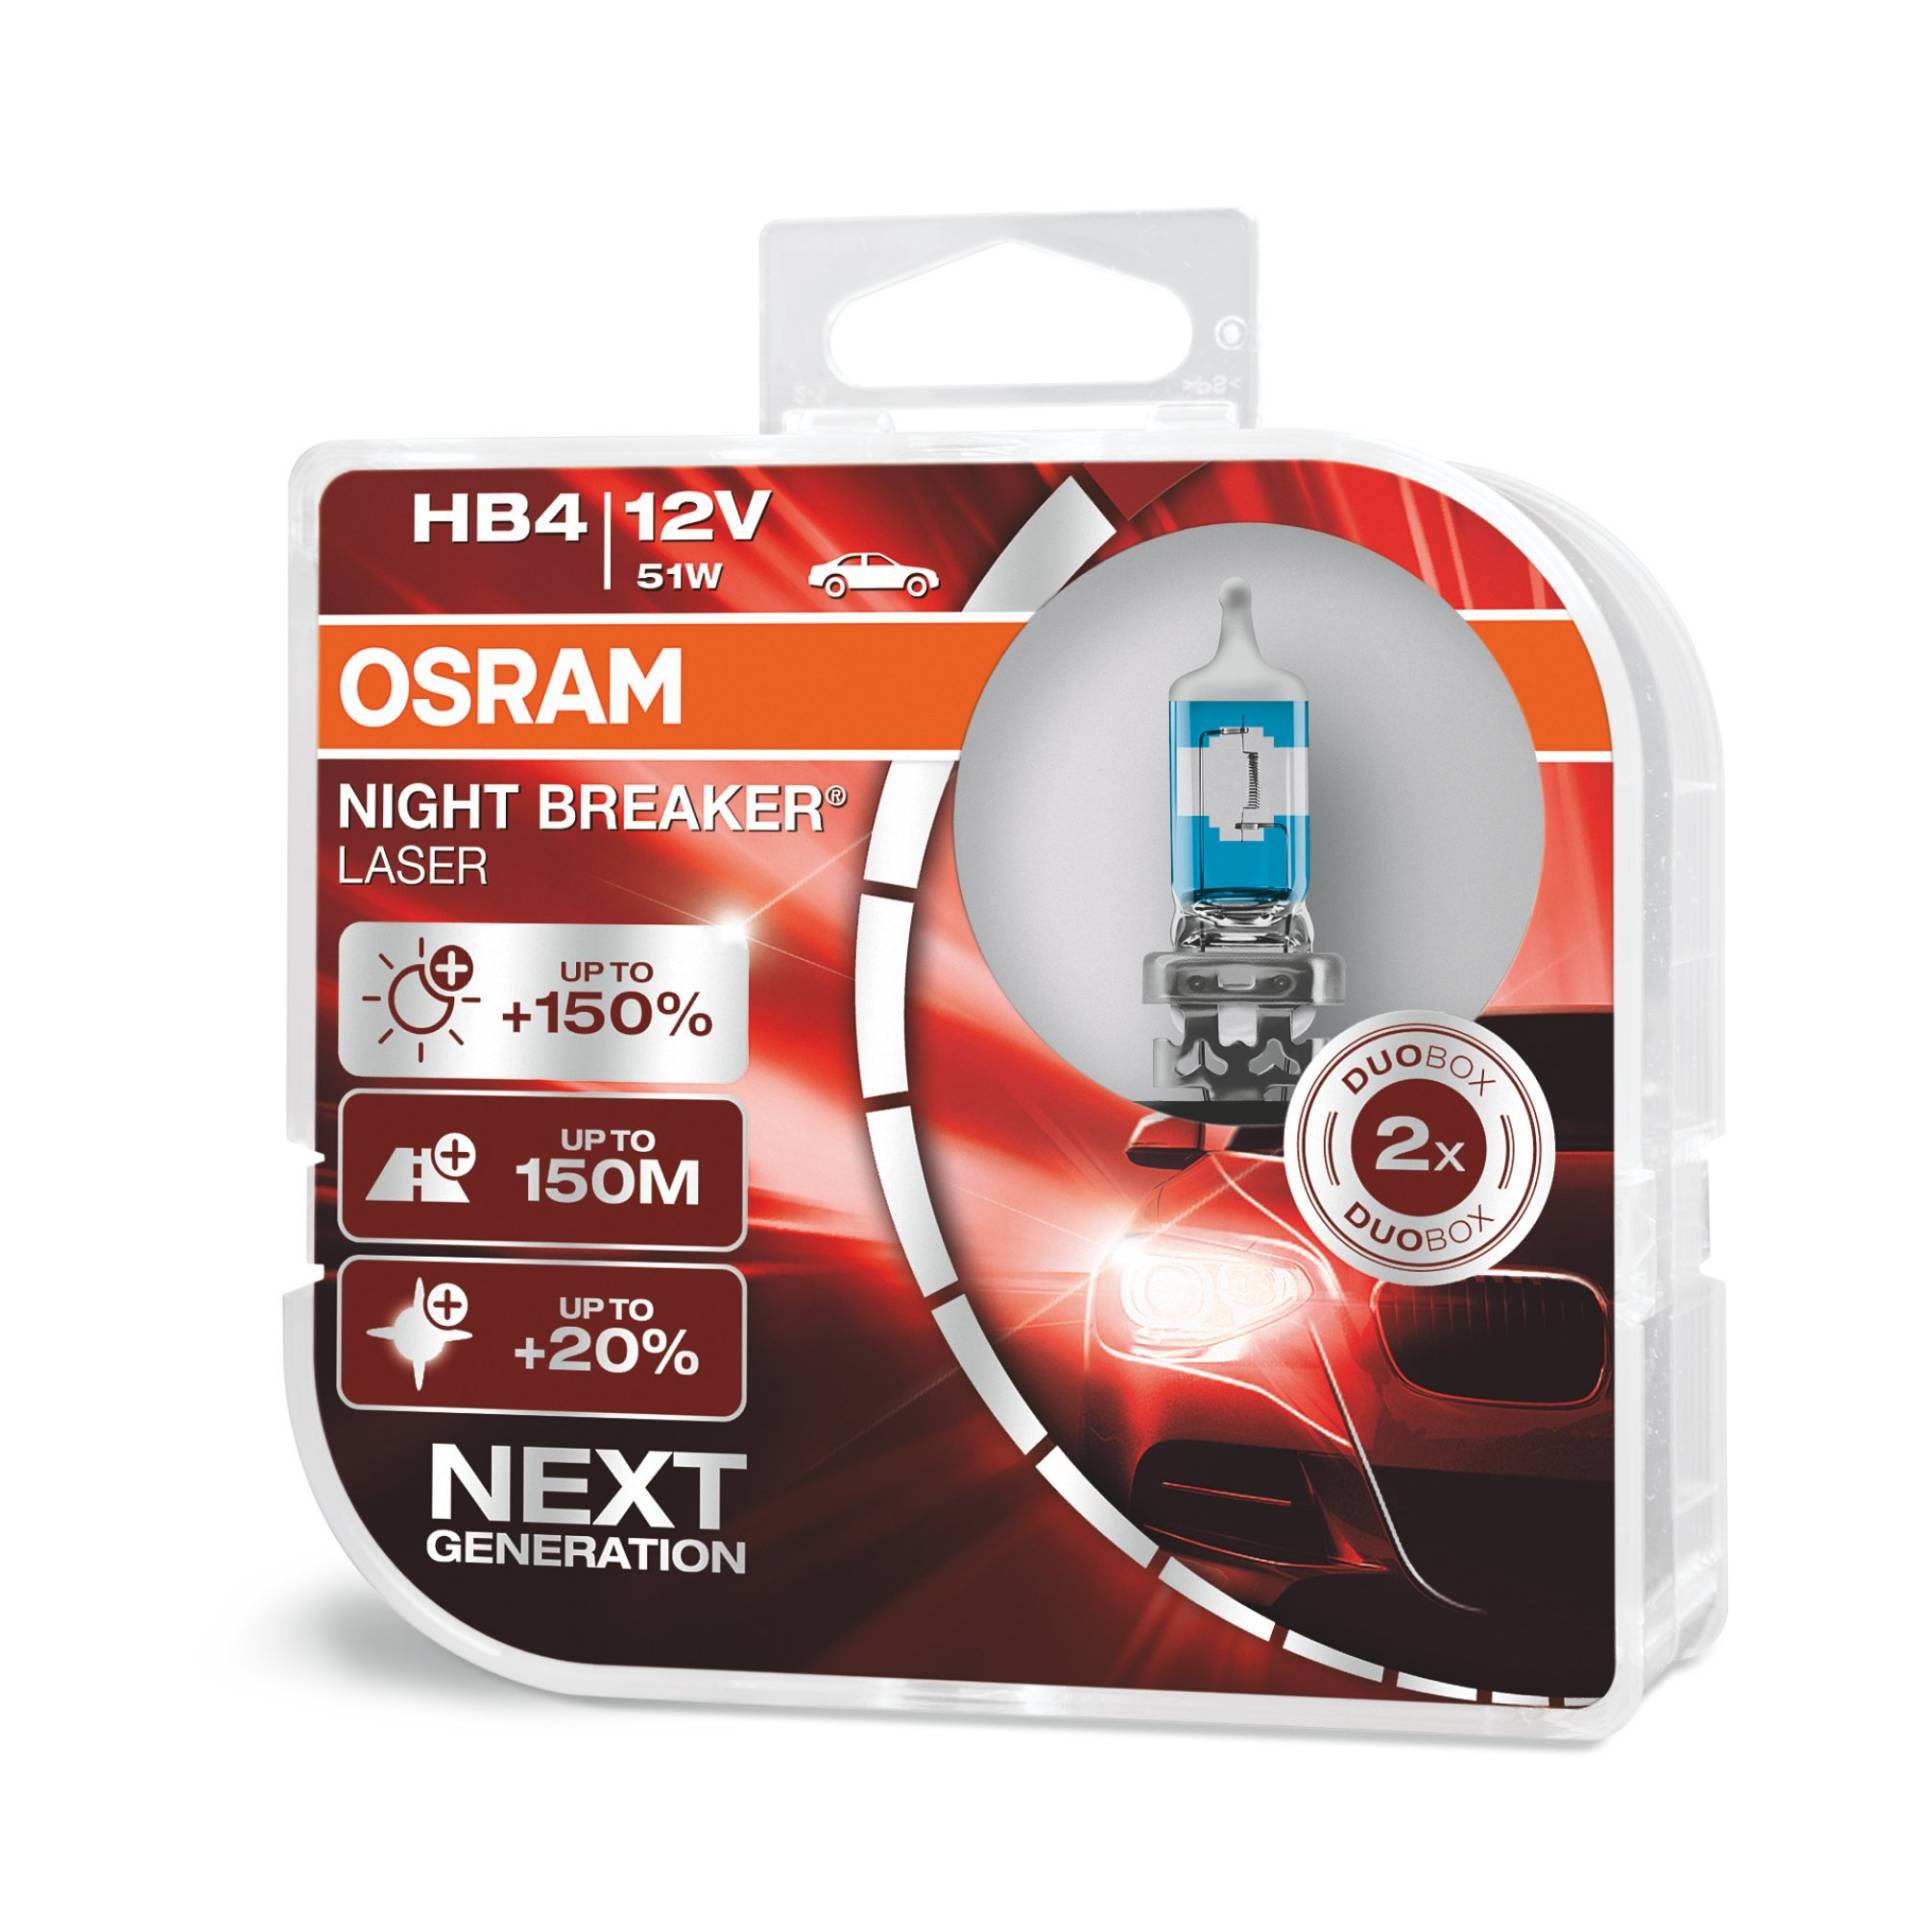 OSRAM NIGHT BREAKER LASER HB4, +150% mehr Helligkeit, Halogen-Scheinwerferlampe, 9006NL-HCB, 12V PKW, Duo Box (2 Lampen) von Osram